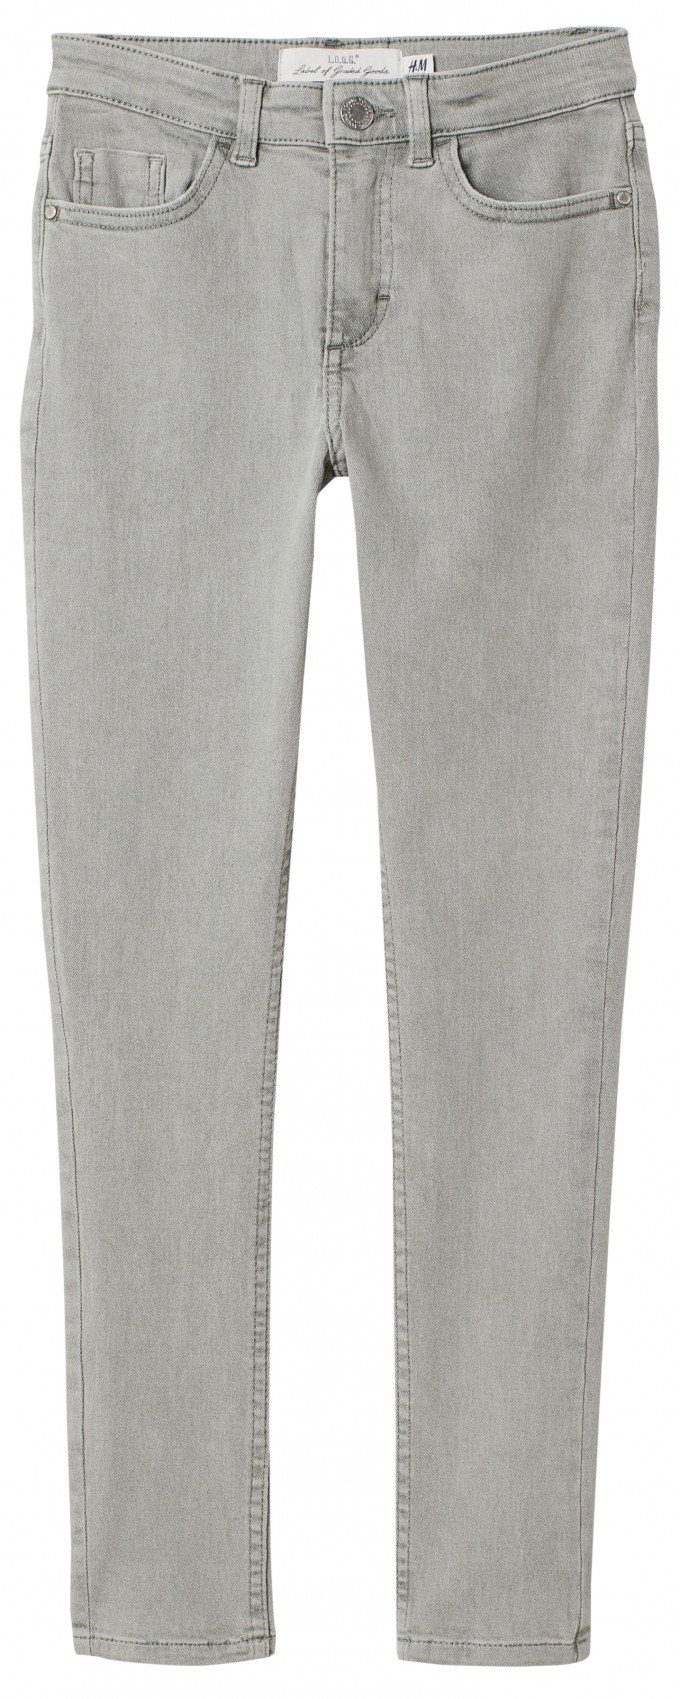 Фото - узкие джинсы цвета хаки стройняшек цена 475 грн. за штуку - Леопольд